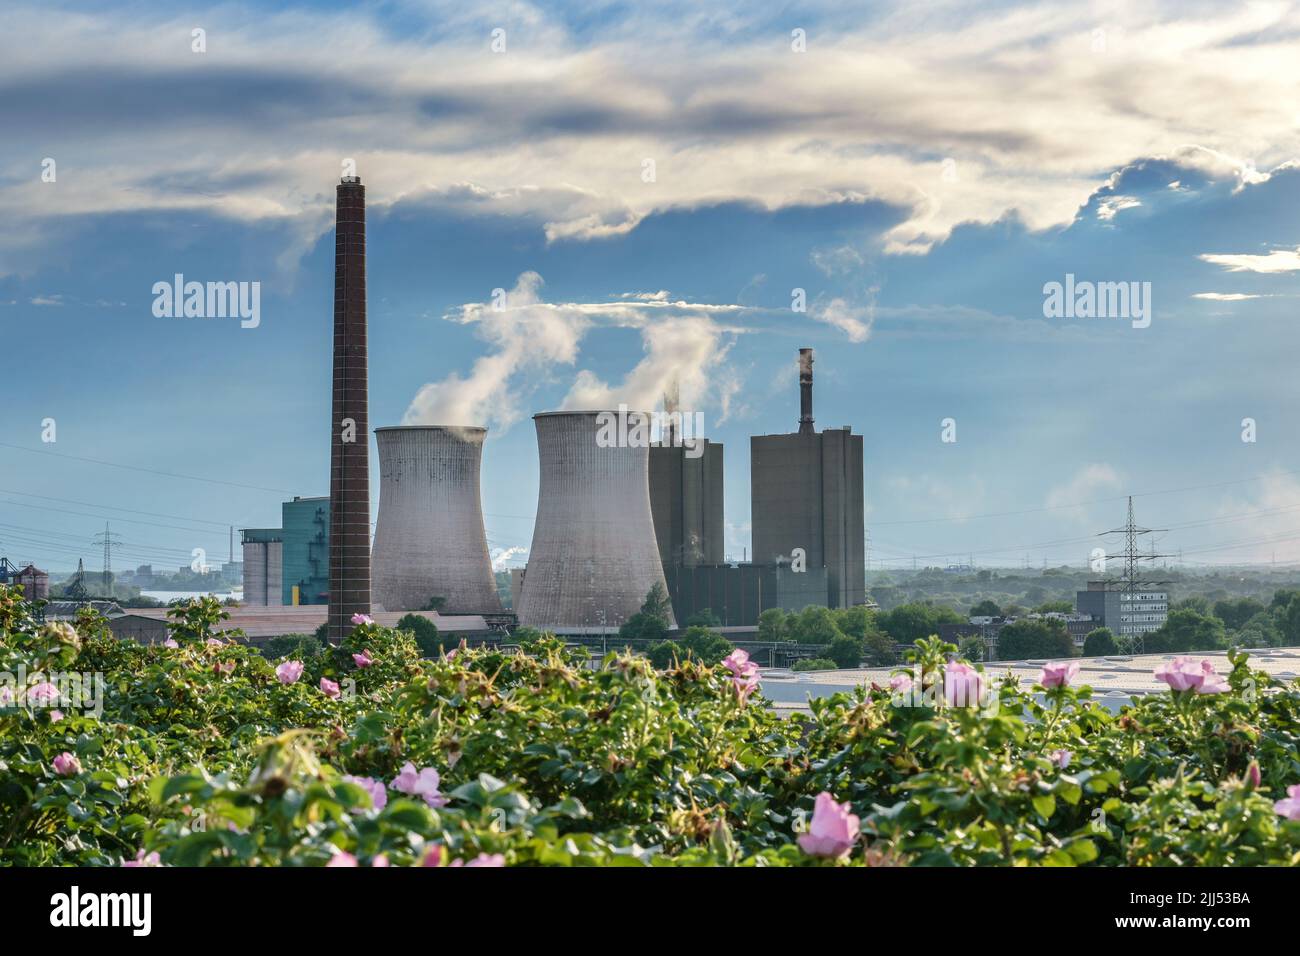 Camino e torri di raffreddamento con inquinamento di una centrale elettrica che utilizza energia fossile vicino alla acciaieria di Duisburg, Germania, nuovamente il paesaggio industriale Foto Stock